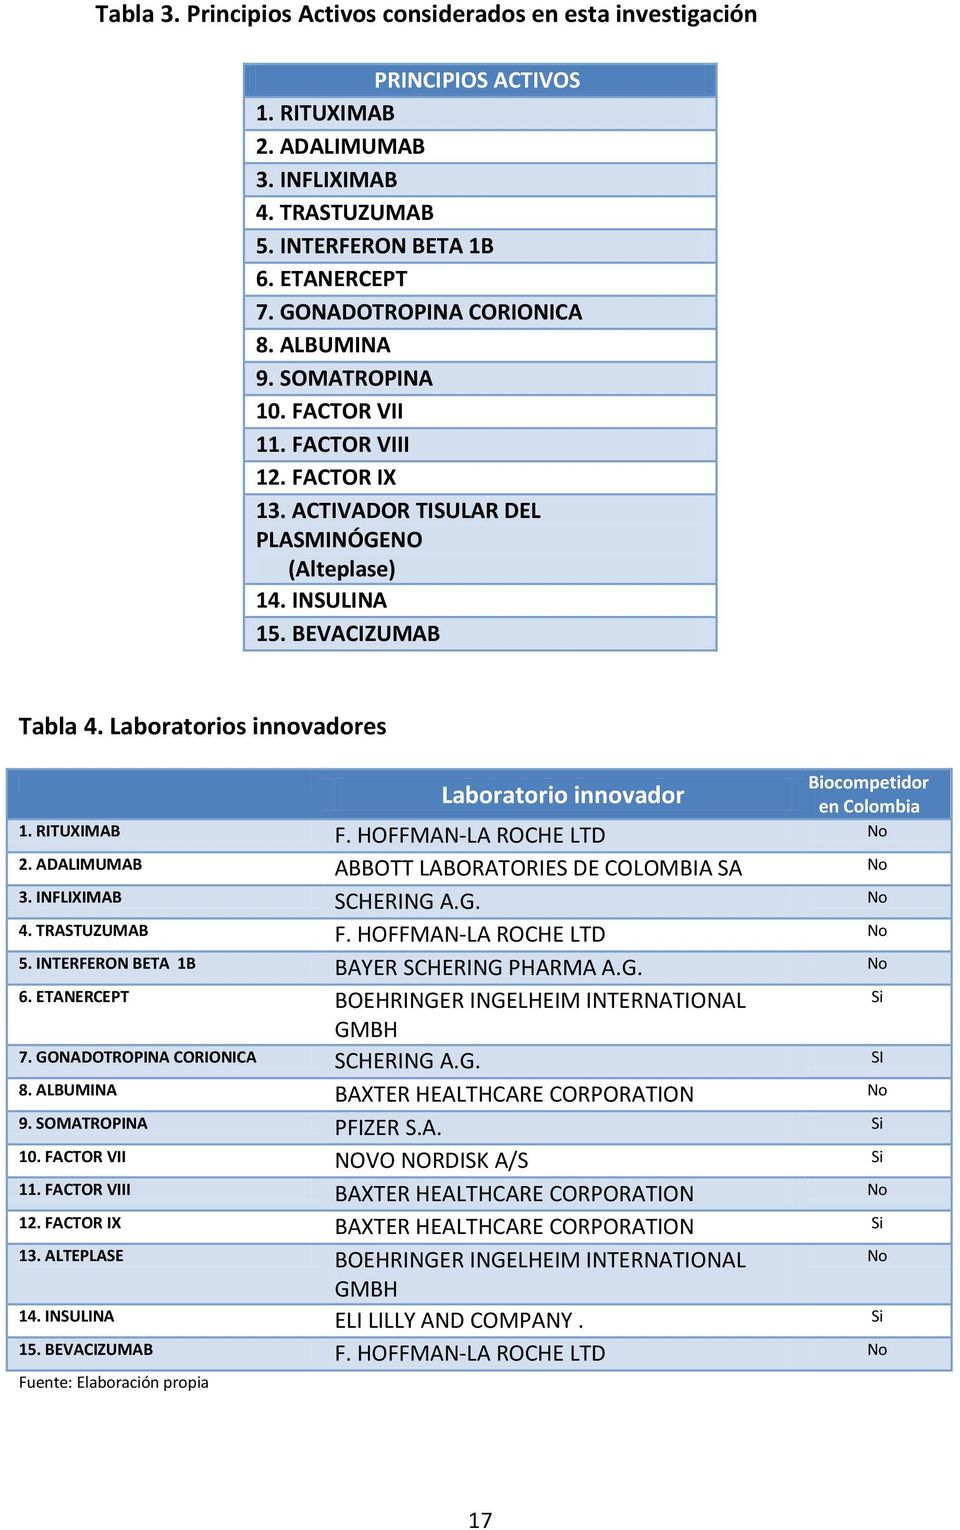 Laboratorios innovadores Laboratorio innovador Biocompetidor en Colombia 1. RITUXIMAB F. HOFFMAN-LA ROCHE LTD No 2. ADALIMUMAB ABBOTT LABORATORIES DE COLOMBIA SA No 3. INFLIXIMAB SCHERING A.G. No 4.